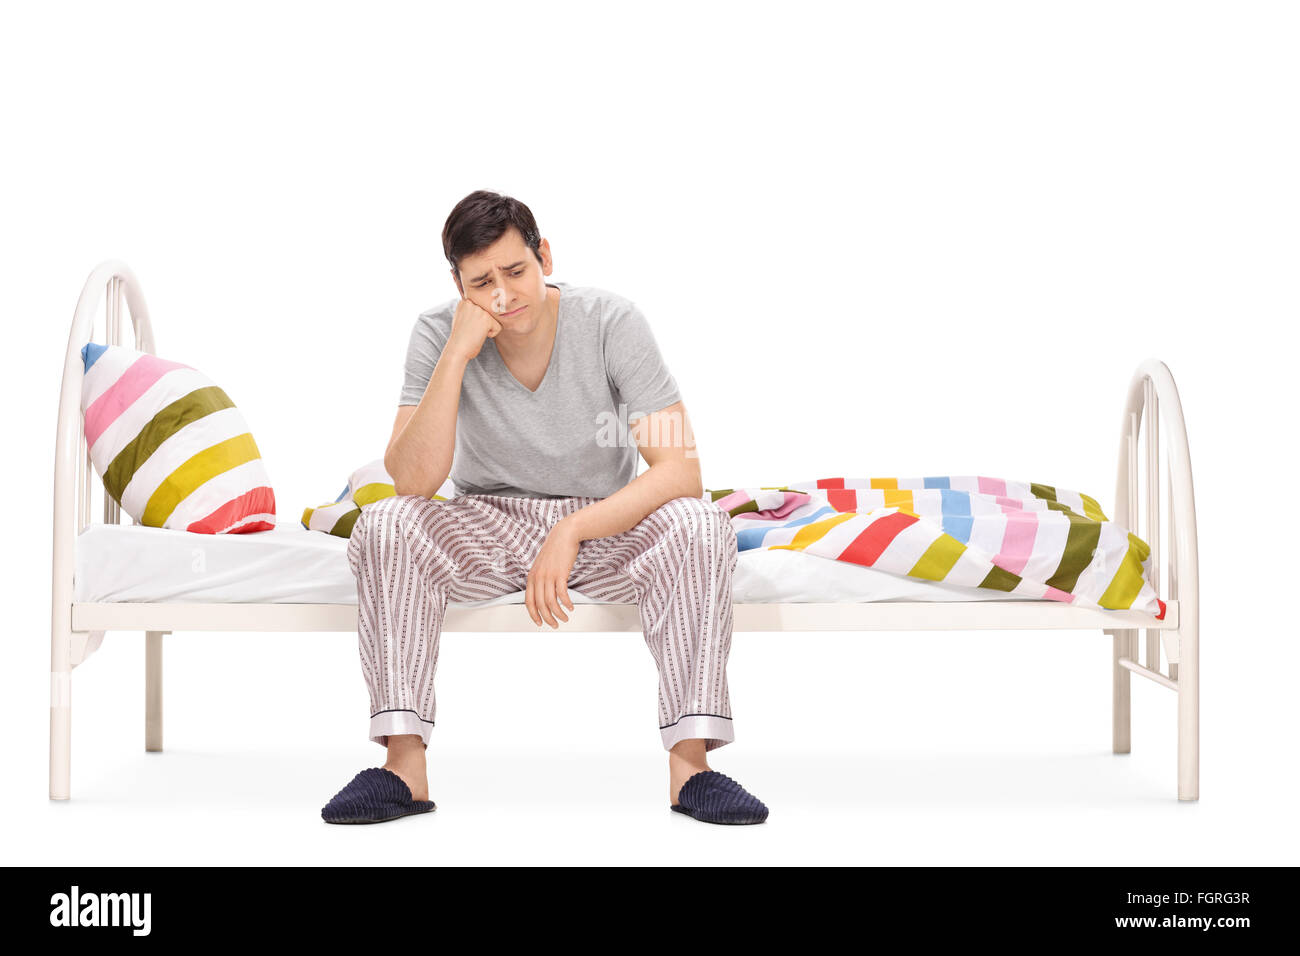 Triste jeune homme assis sur un lit et contemplant isolé sur fond blanc Banque D'Images